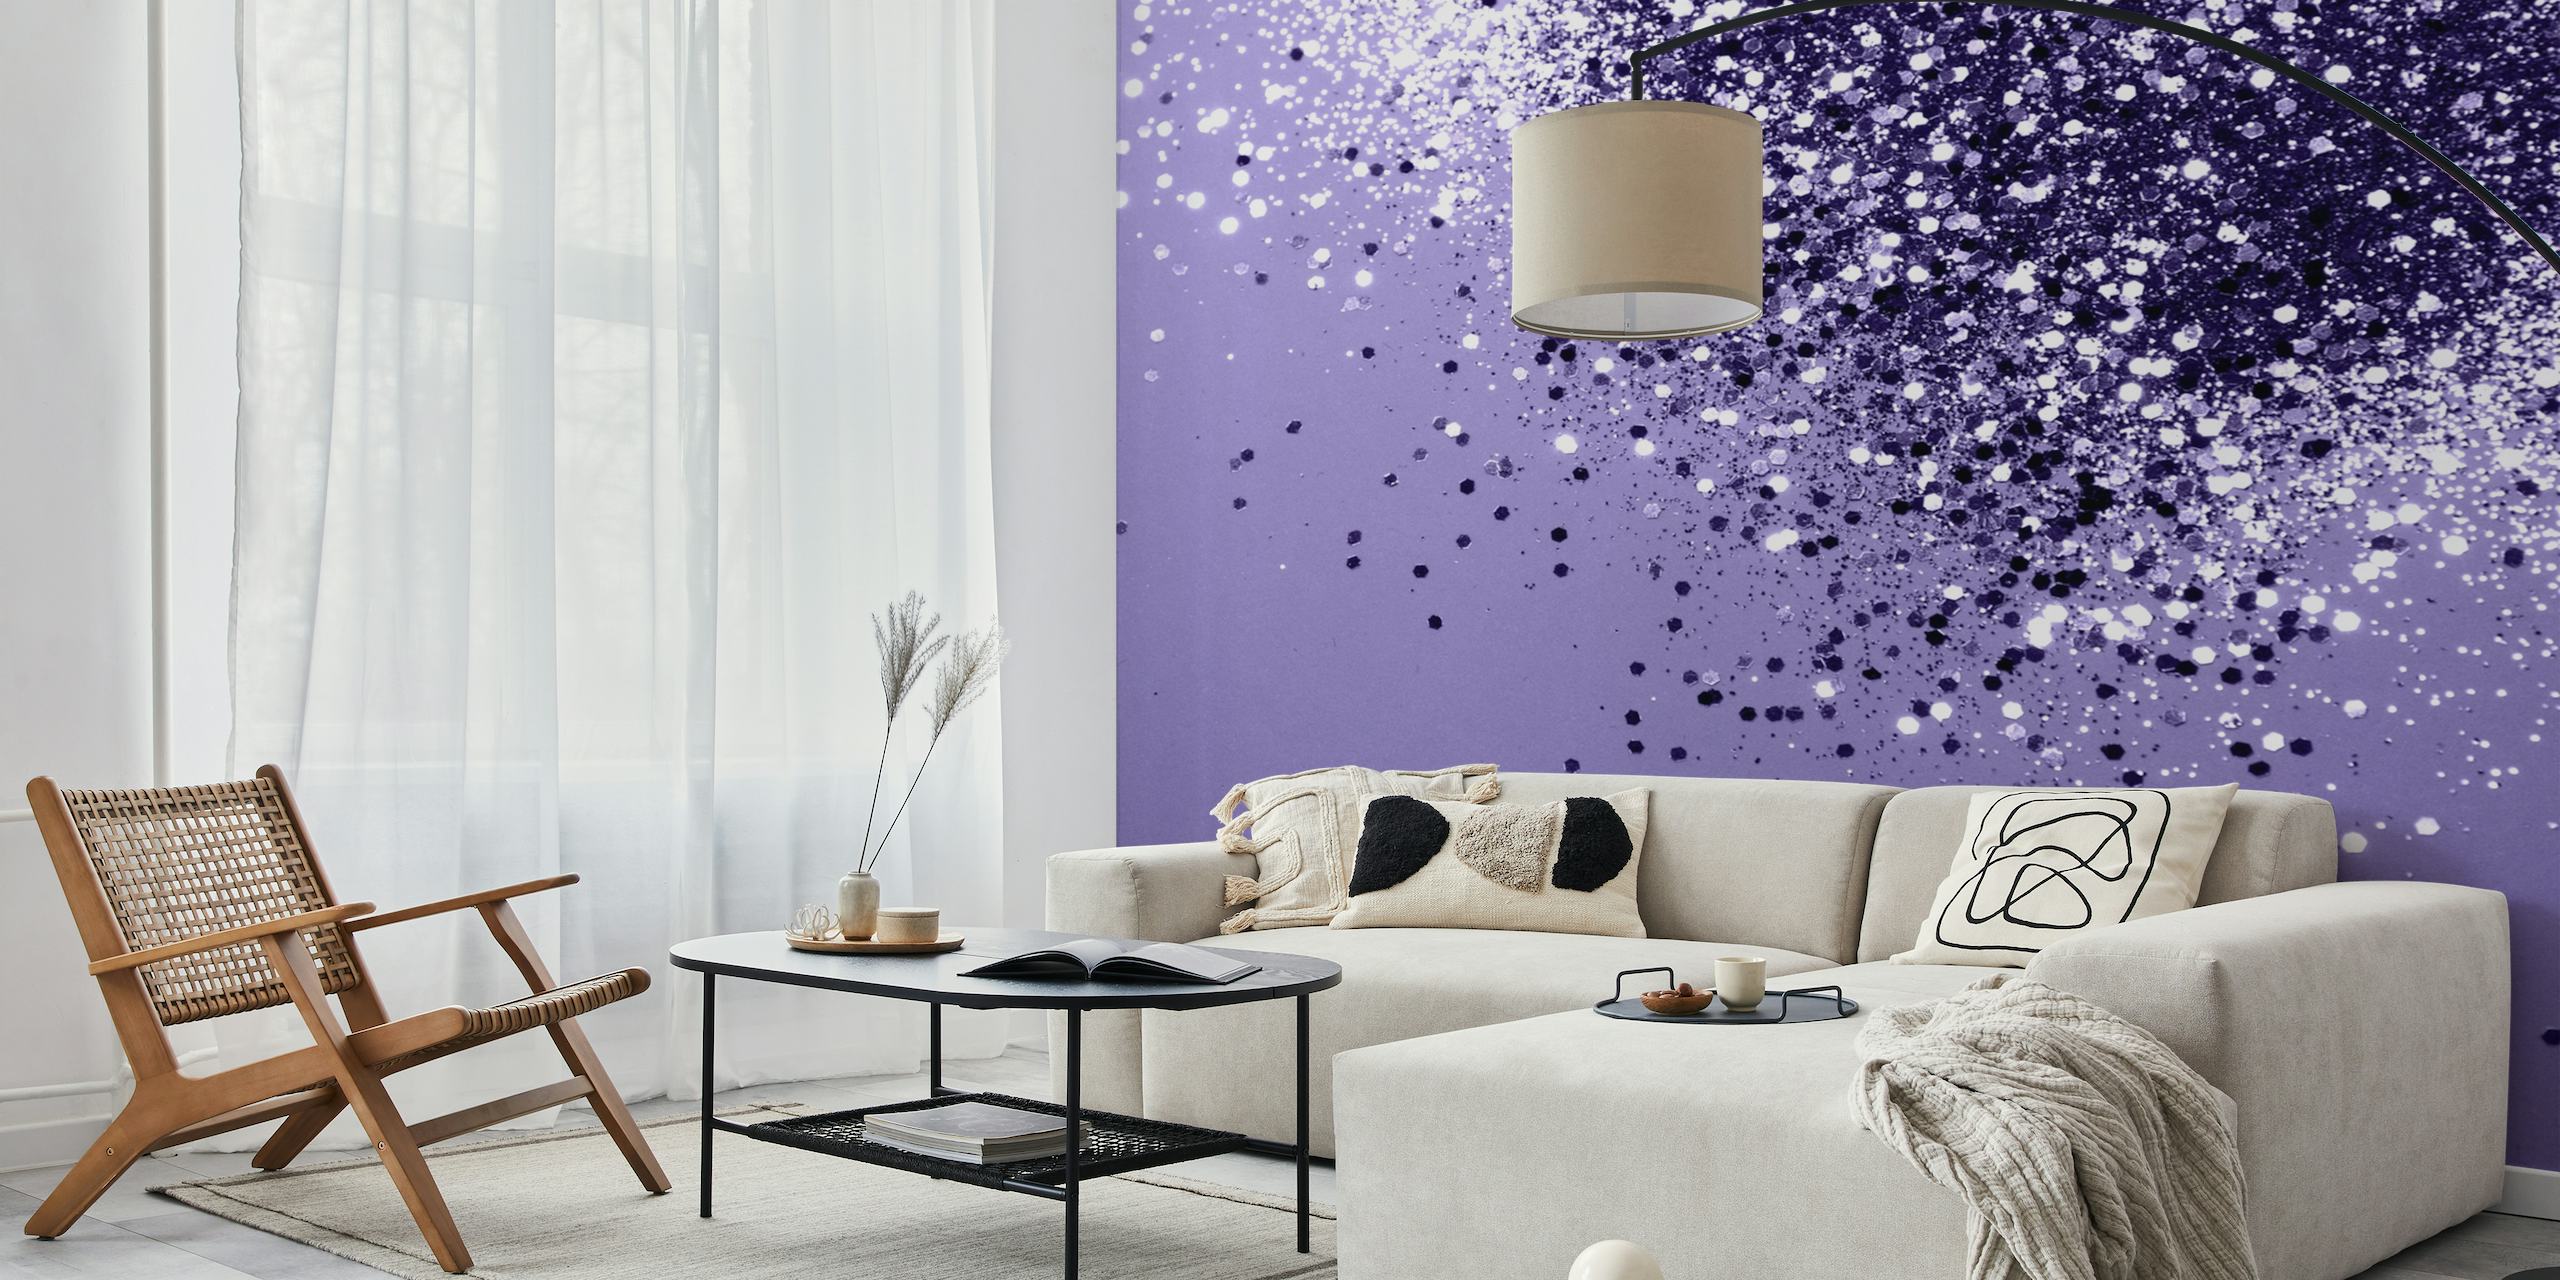 Fototapete „Ultra Violet Glitter Dream 1“ mit funkelndem Glitzer auf violettem Hintergrund